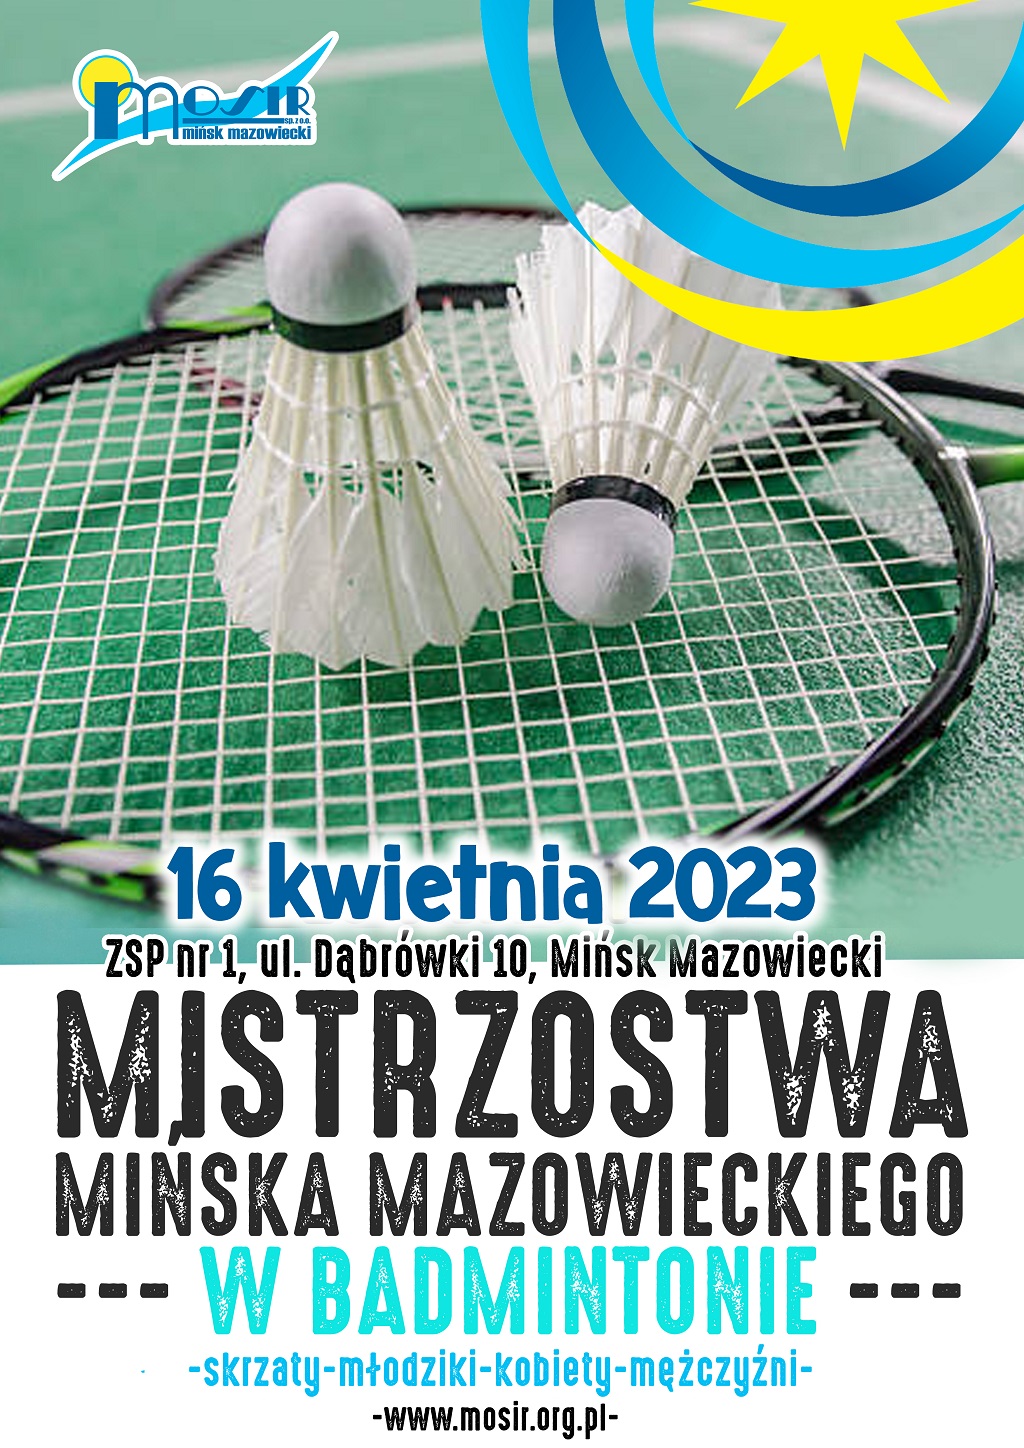 Mistrzostwa Mińska Mazowieckiego w Badmintonie 16 kwietnia 2023 ZSP nr 1, ul. Dąbrówki 10, Mińsk Mazowiecki, skrzaty, młodziki, kobiety, mężczyźni.